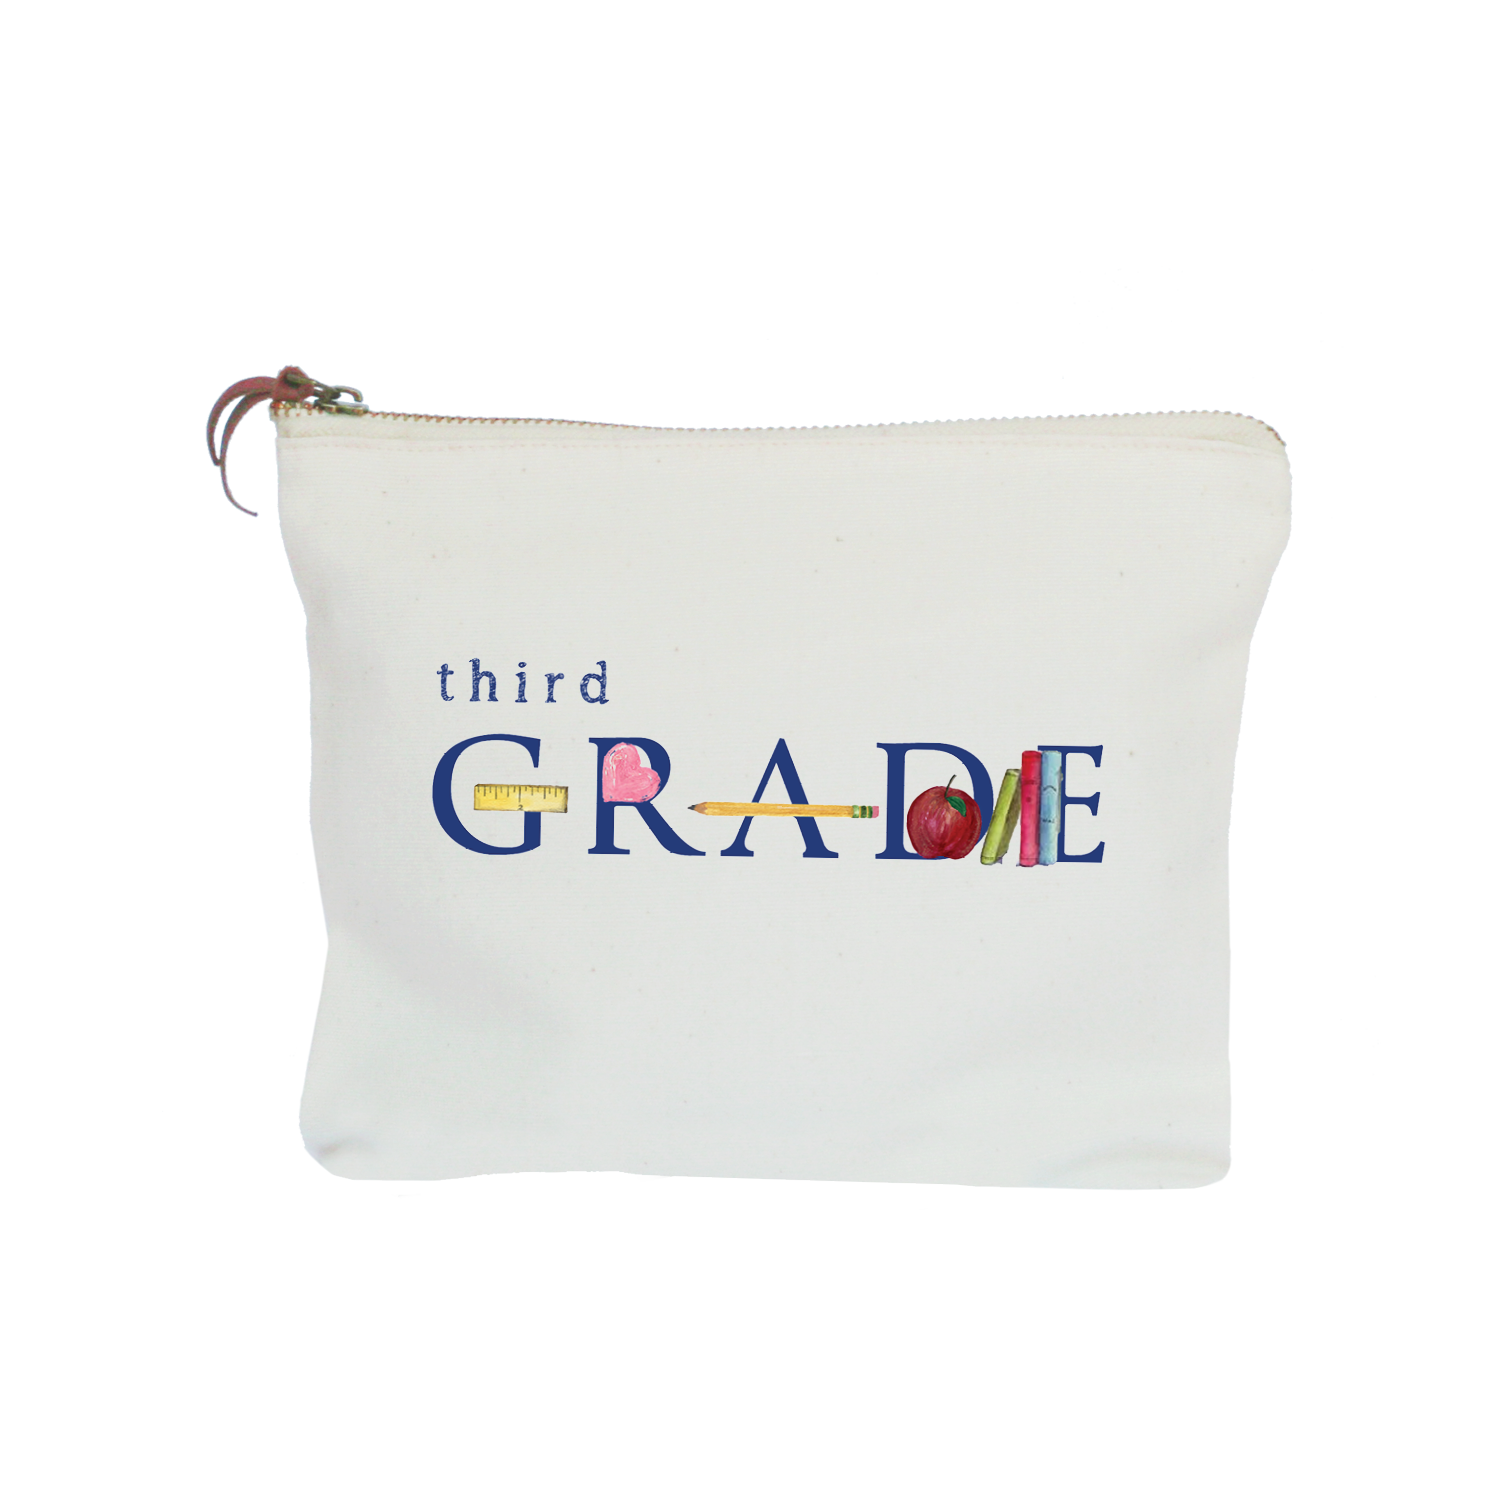 third grade zipper pouch